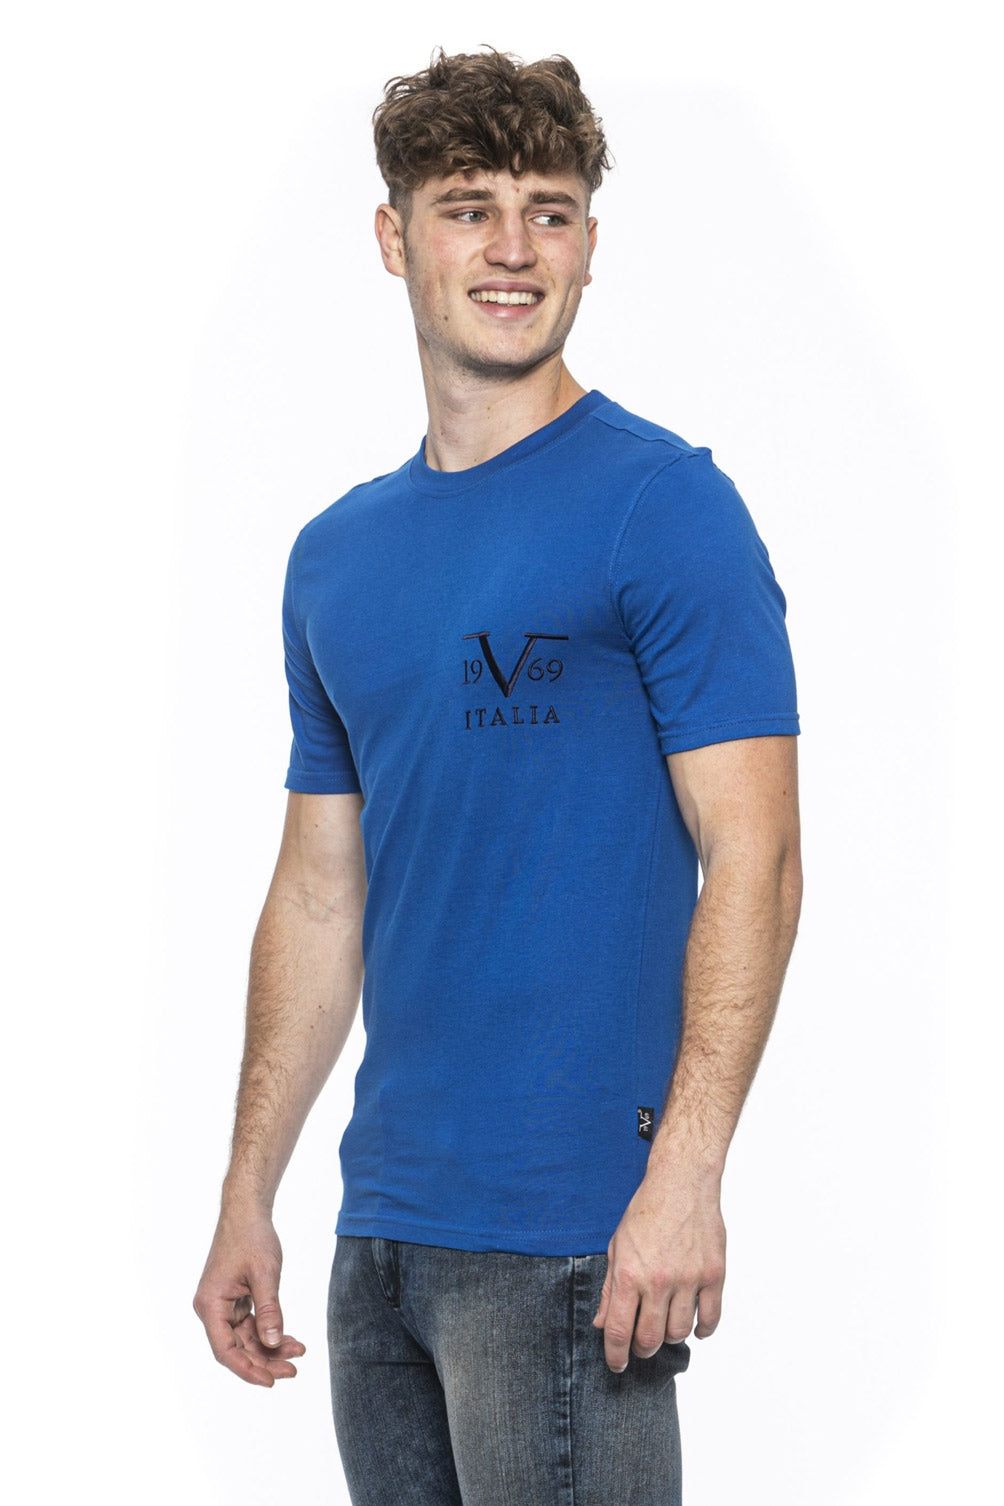 19V69 Italia Mens T-Shirt Blue TROY ROYAL BLUE